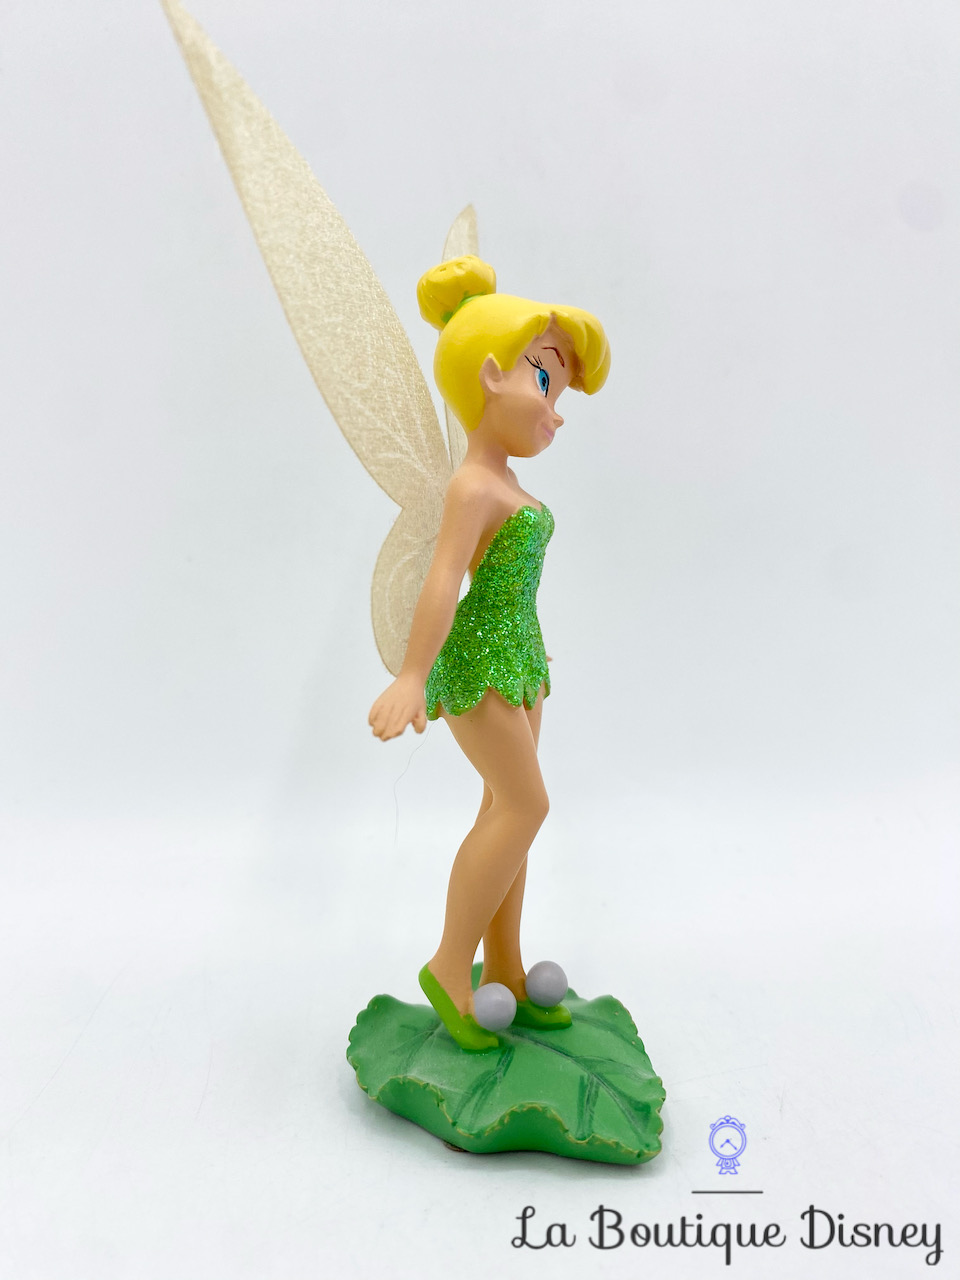 Figurine imprimée en 3D : La fée clochette ?